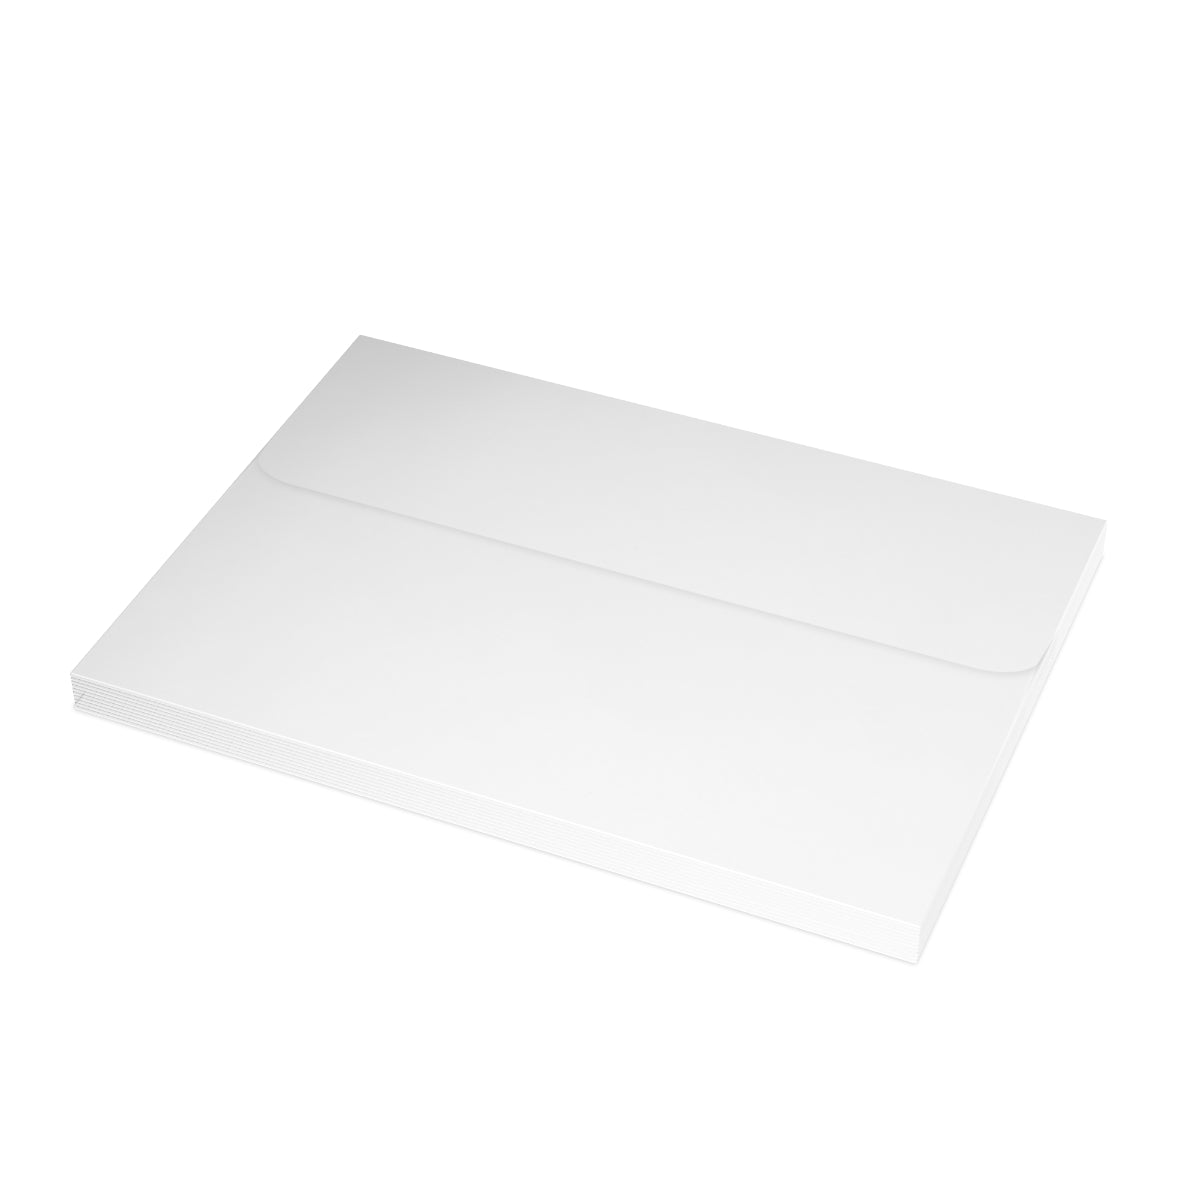 Route 66 Folded Matte Notecards + Envelopes (10pcs)